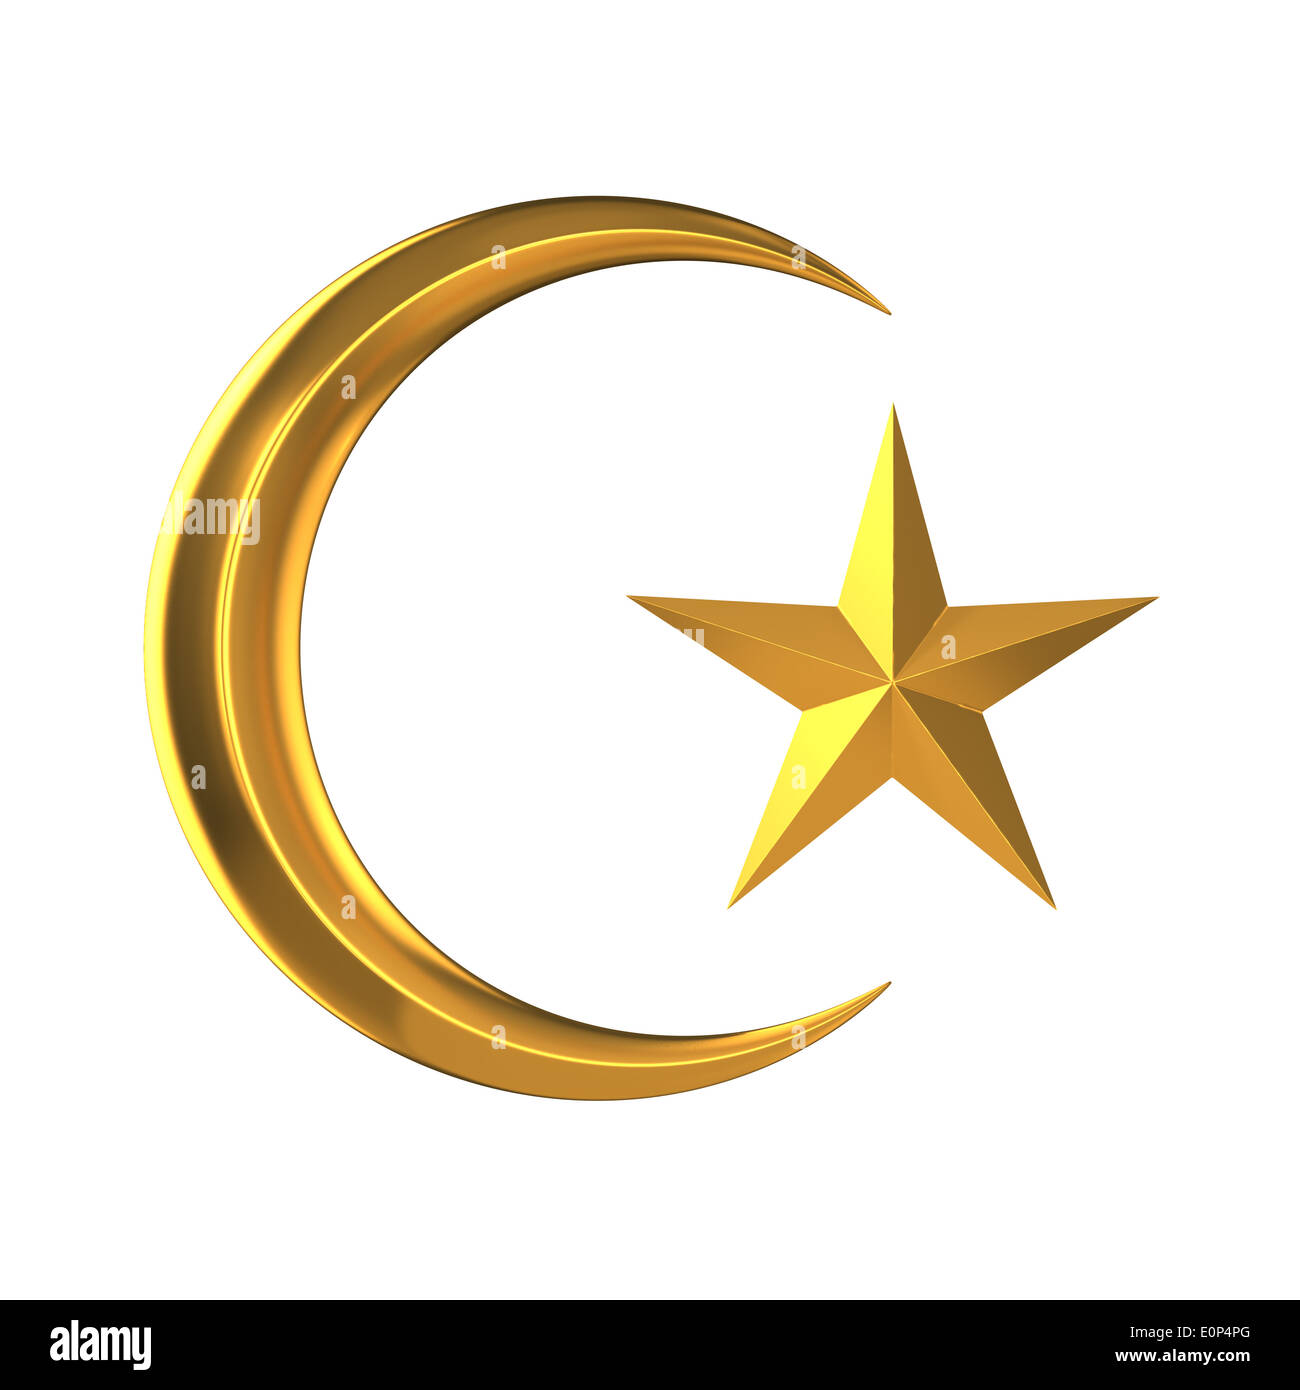 printable-ramadan-moon-and-star-template